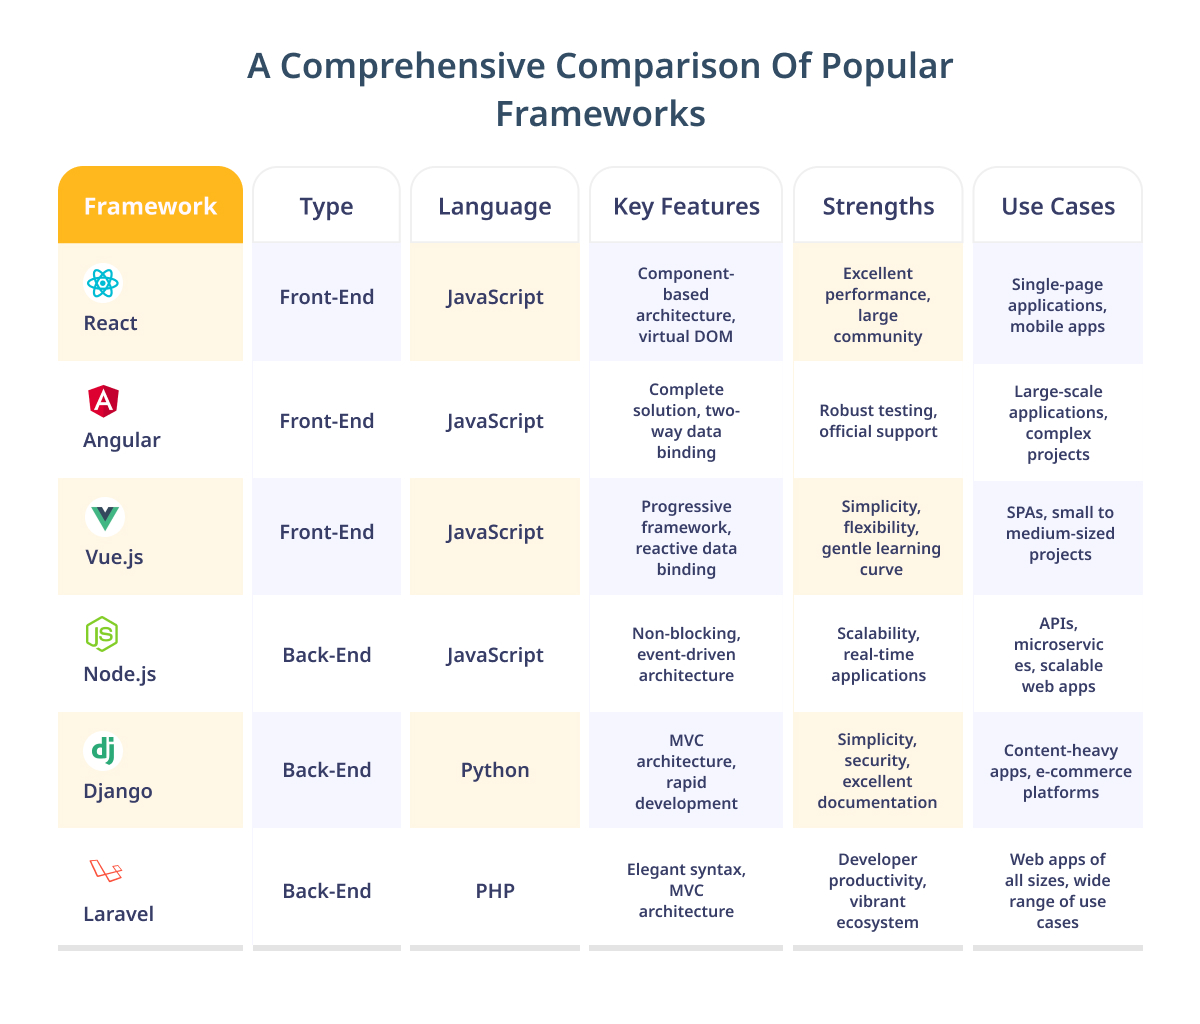 Tabular Comparison of Popular Frameworks